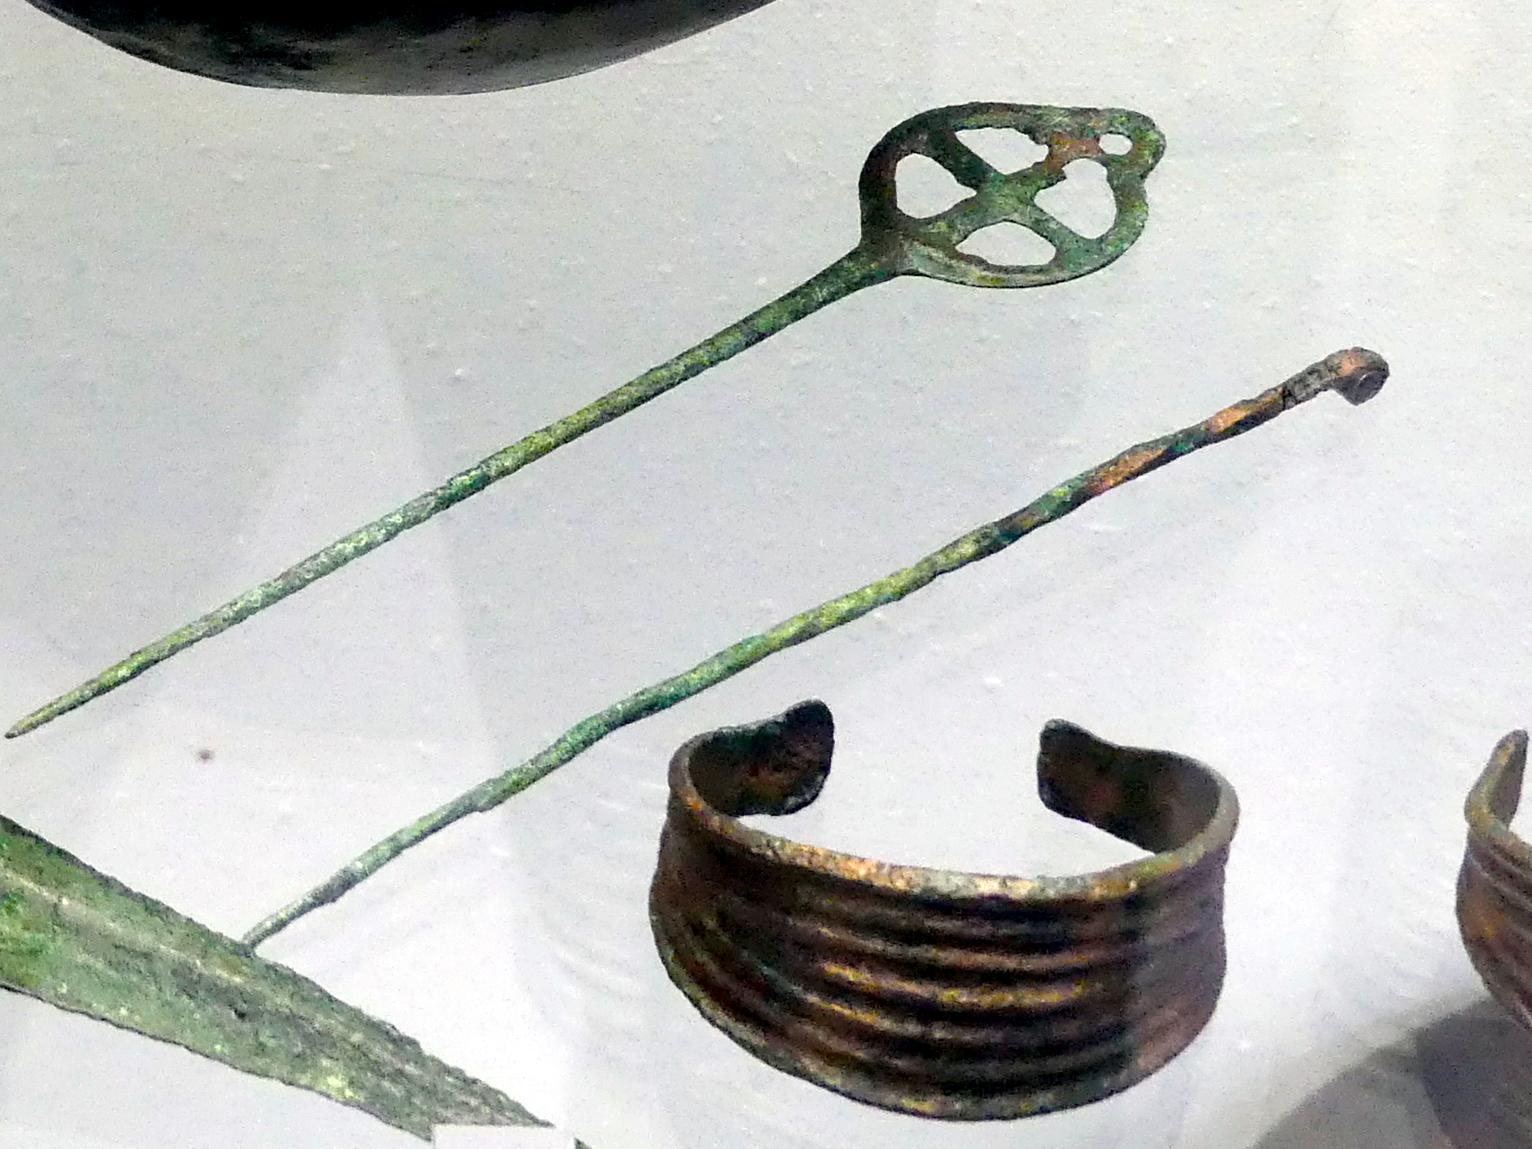 Tordierte Rollenkopfnadel, Mittlere Bronzezeit C1, 1500 - 1400 v. Chr.